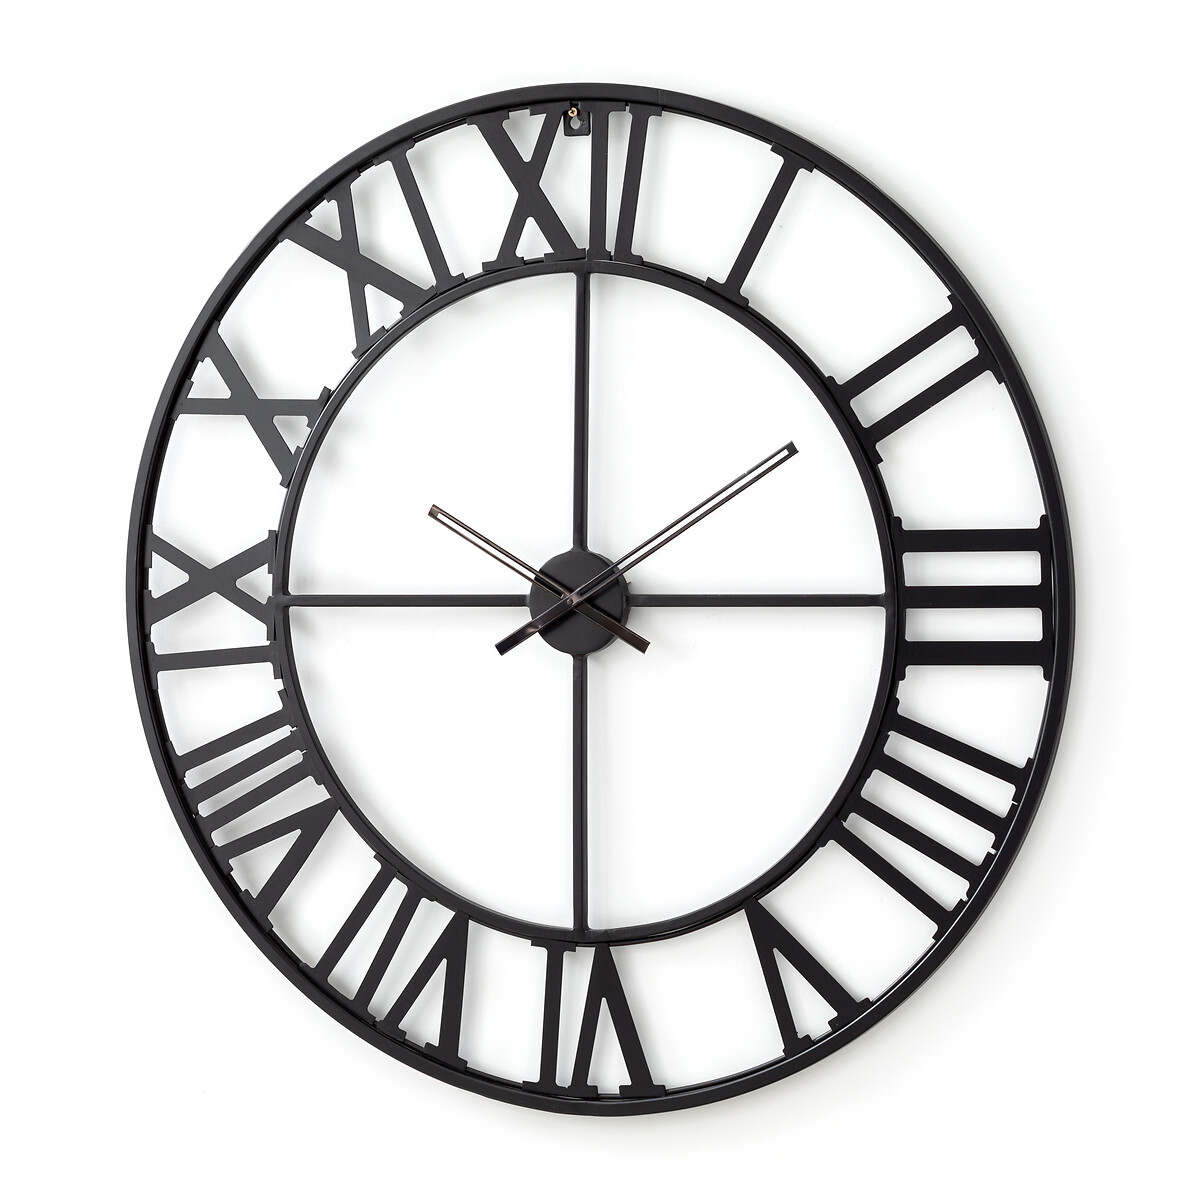 Horloge indus Ø100 cm, Zivos